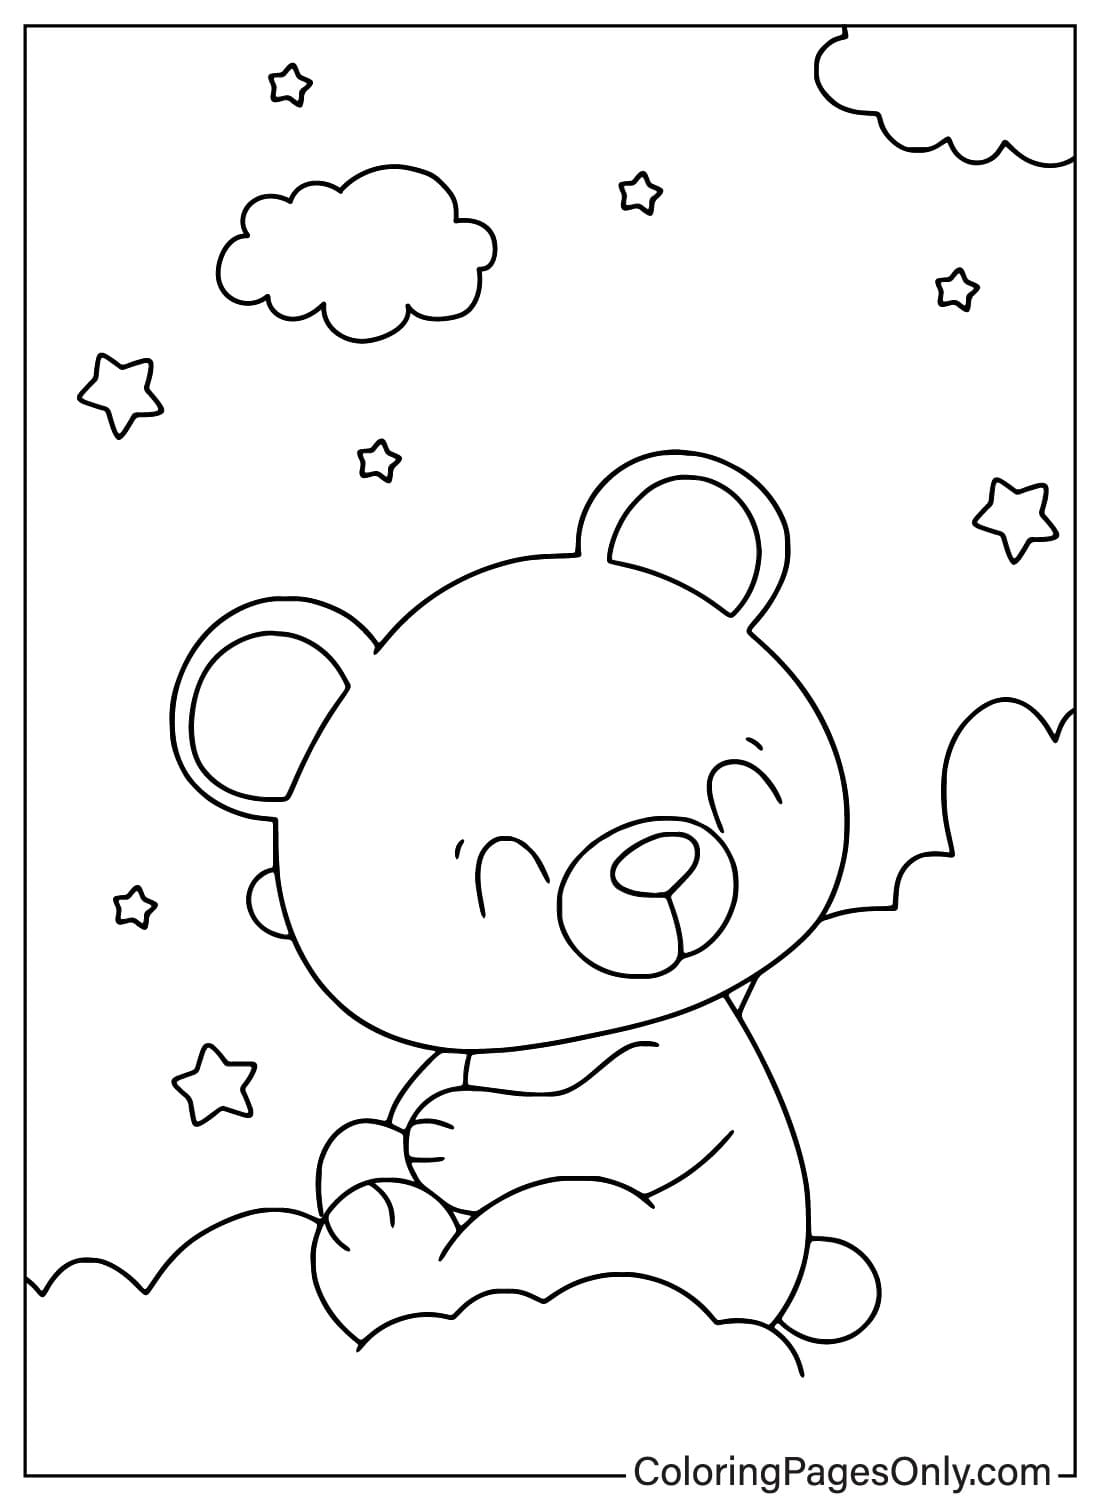 Simpatico orsacchiotto da colorare di Teddy Bear